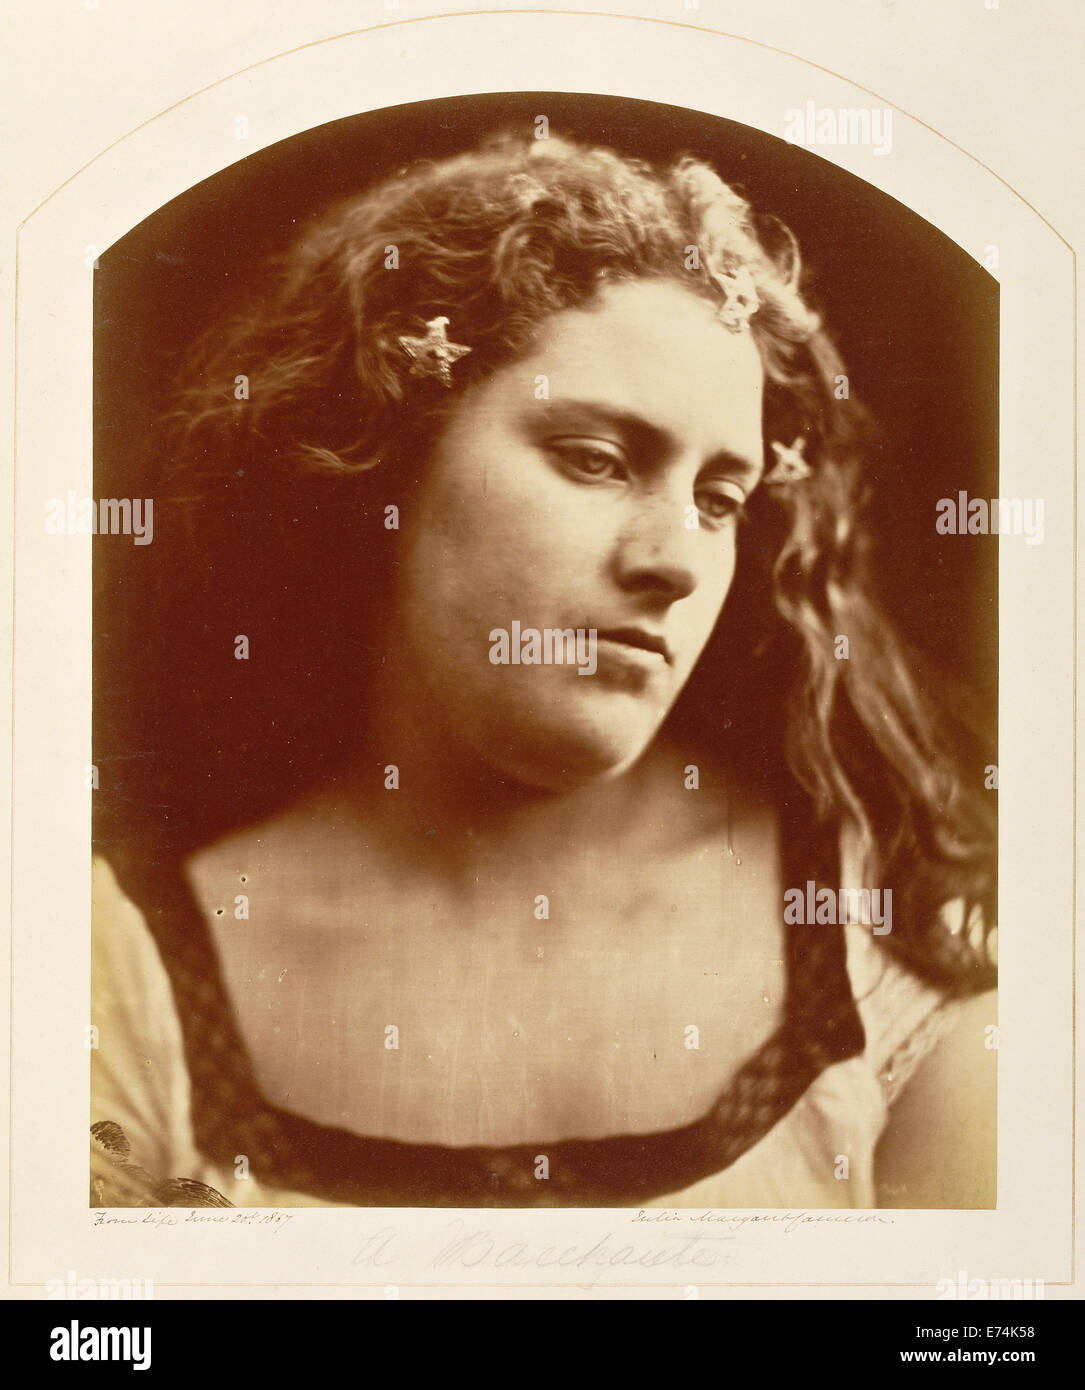 Une Bacchante ; Julia Margaret Cameron, britannique, né en Inde, 1815 - 1879 ; l'eau douce, l'Angleterre, l'Europe ; 20 juin, 1867 Banque D'Images